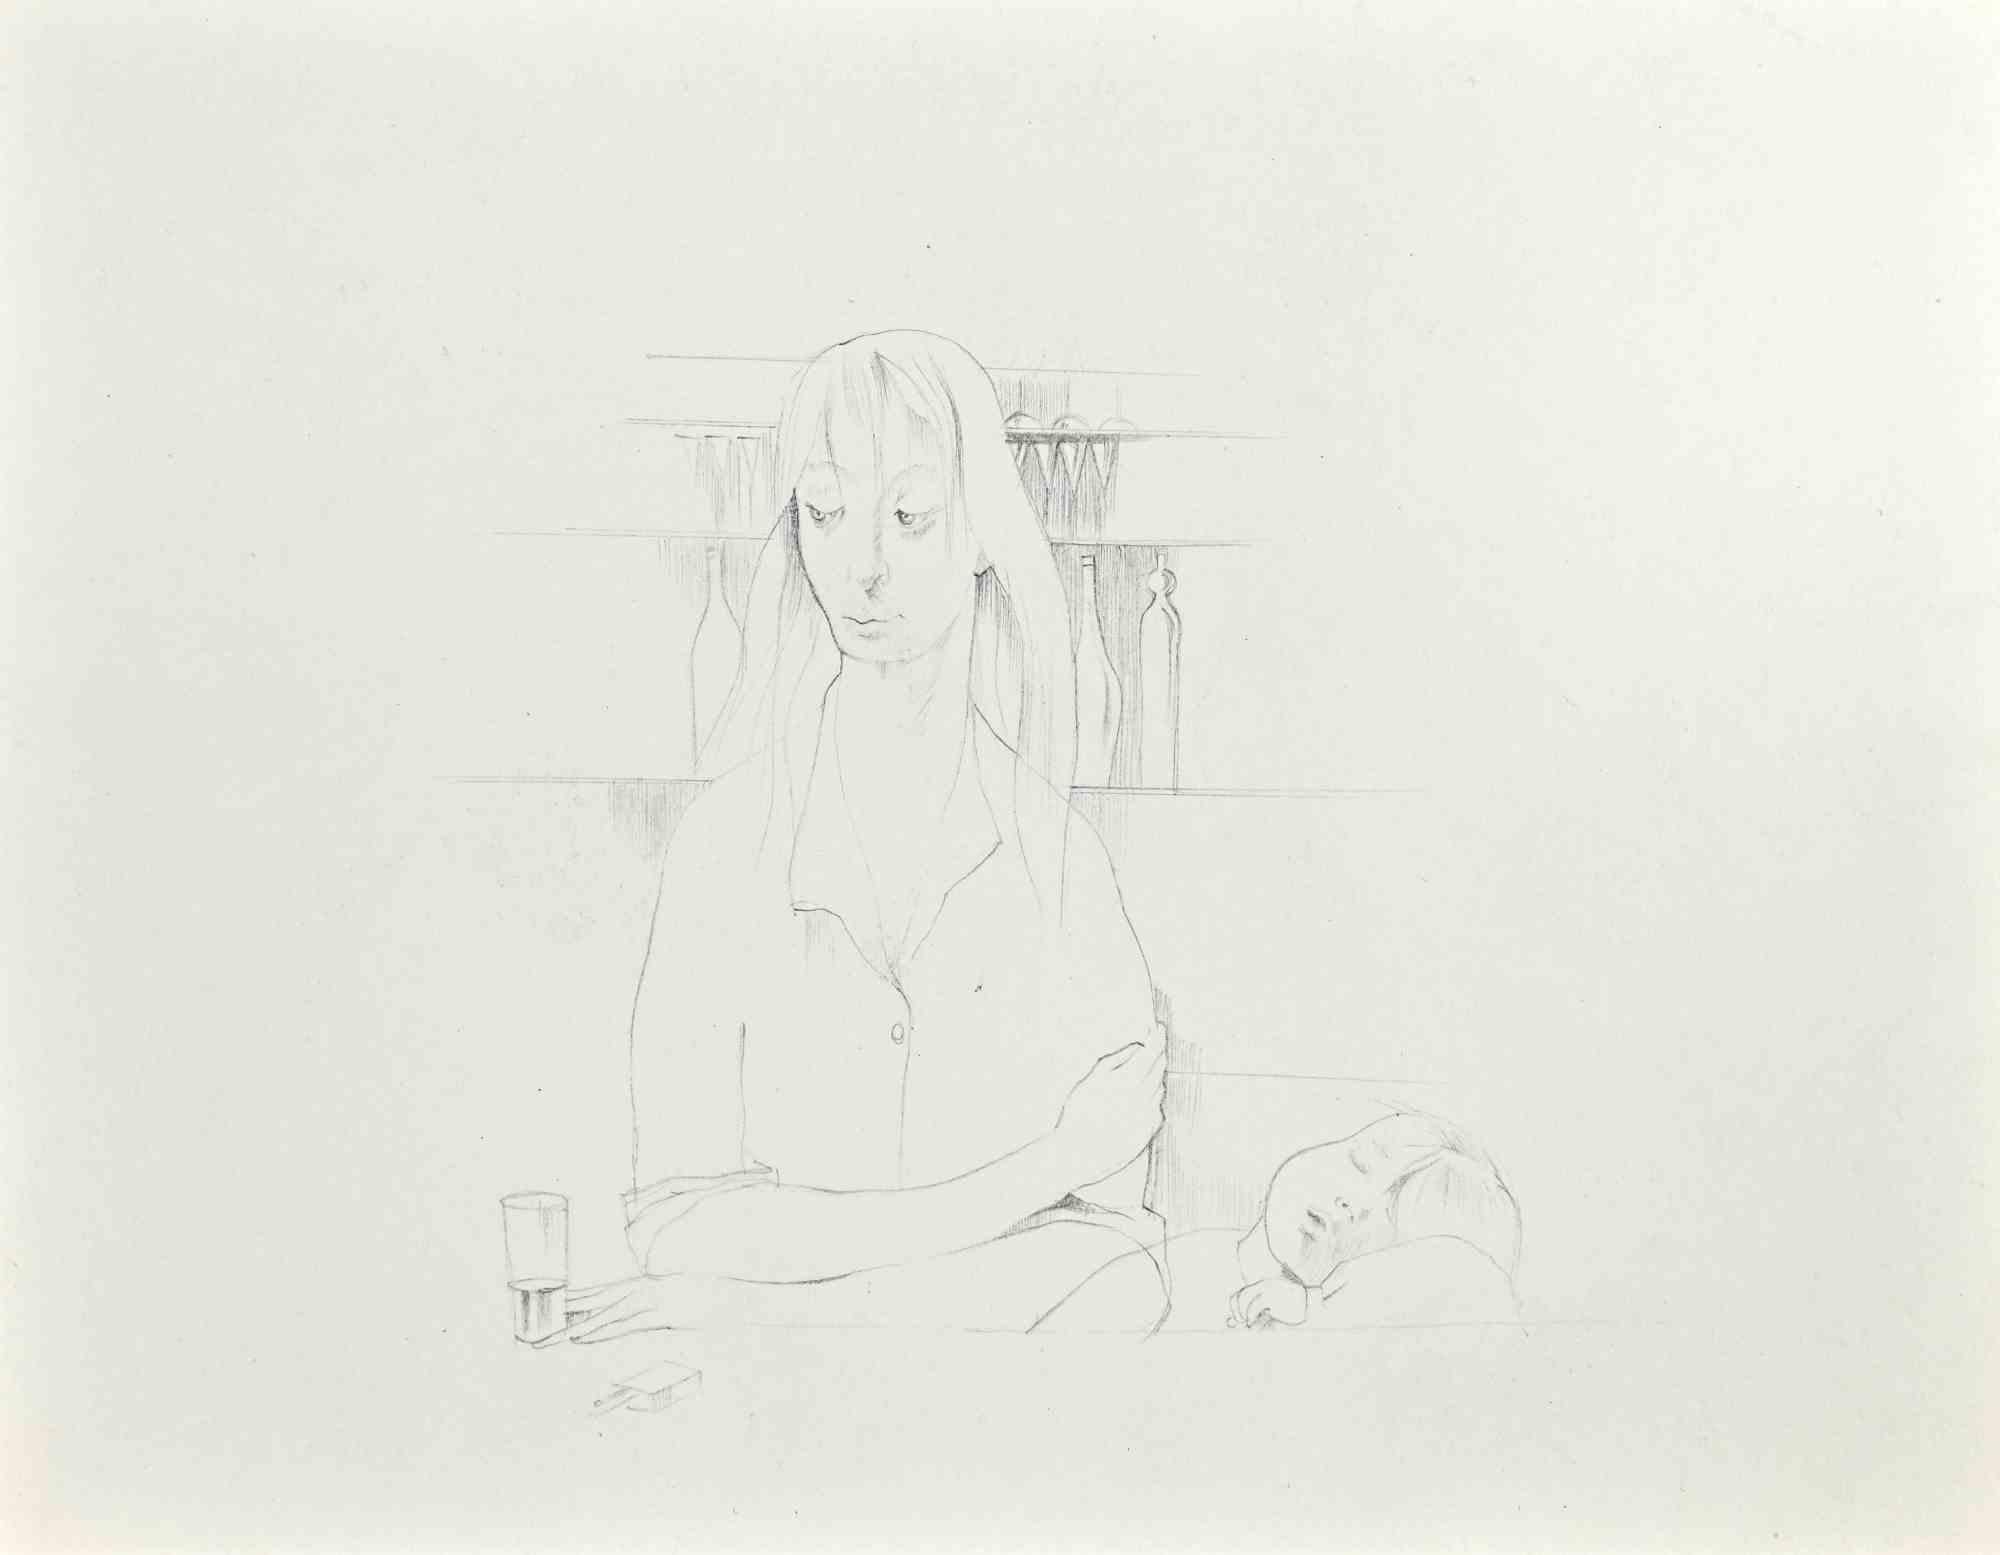 Portrait de la mère et de l'enfant est une œuvre d'art réalisée par Buscot, au milieu du 20e siècle.

Dessin au crayon, 27 x 21 cm. 

Signé au dos. 

Bon état, à l'exception d'une pliure dans la marge inférieure.

